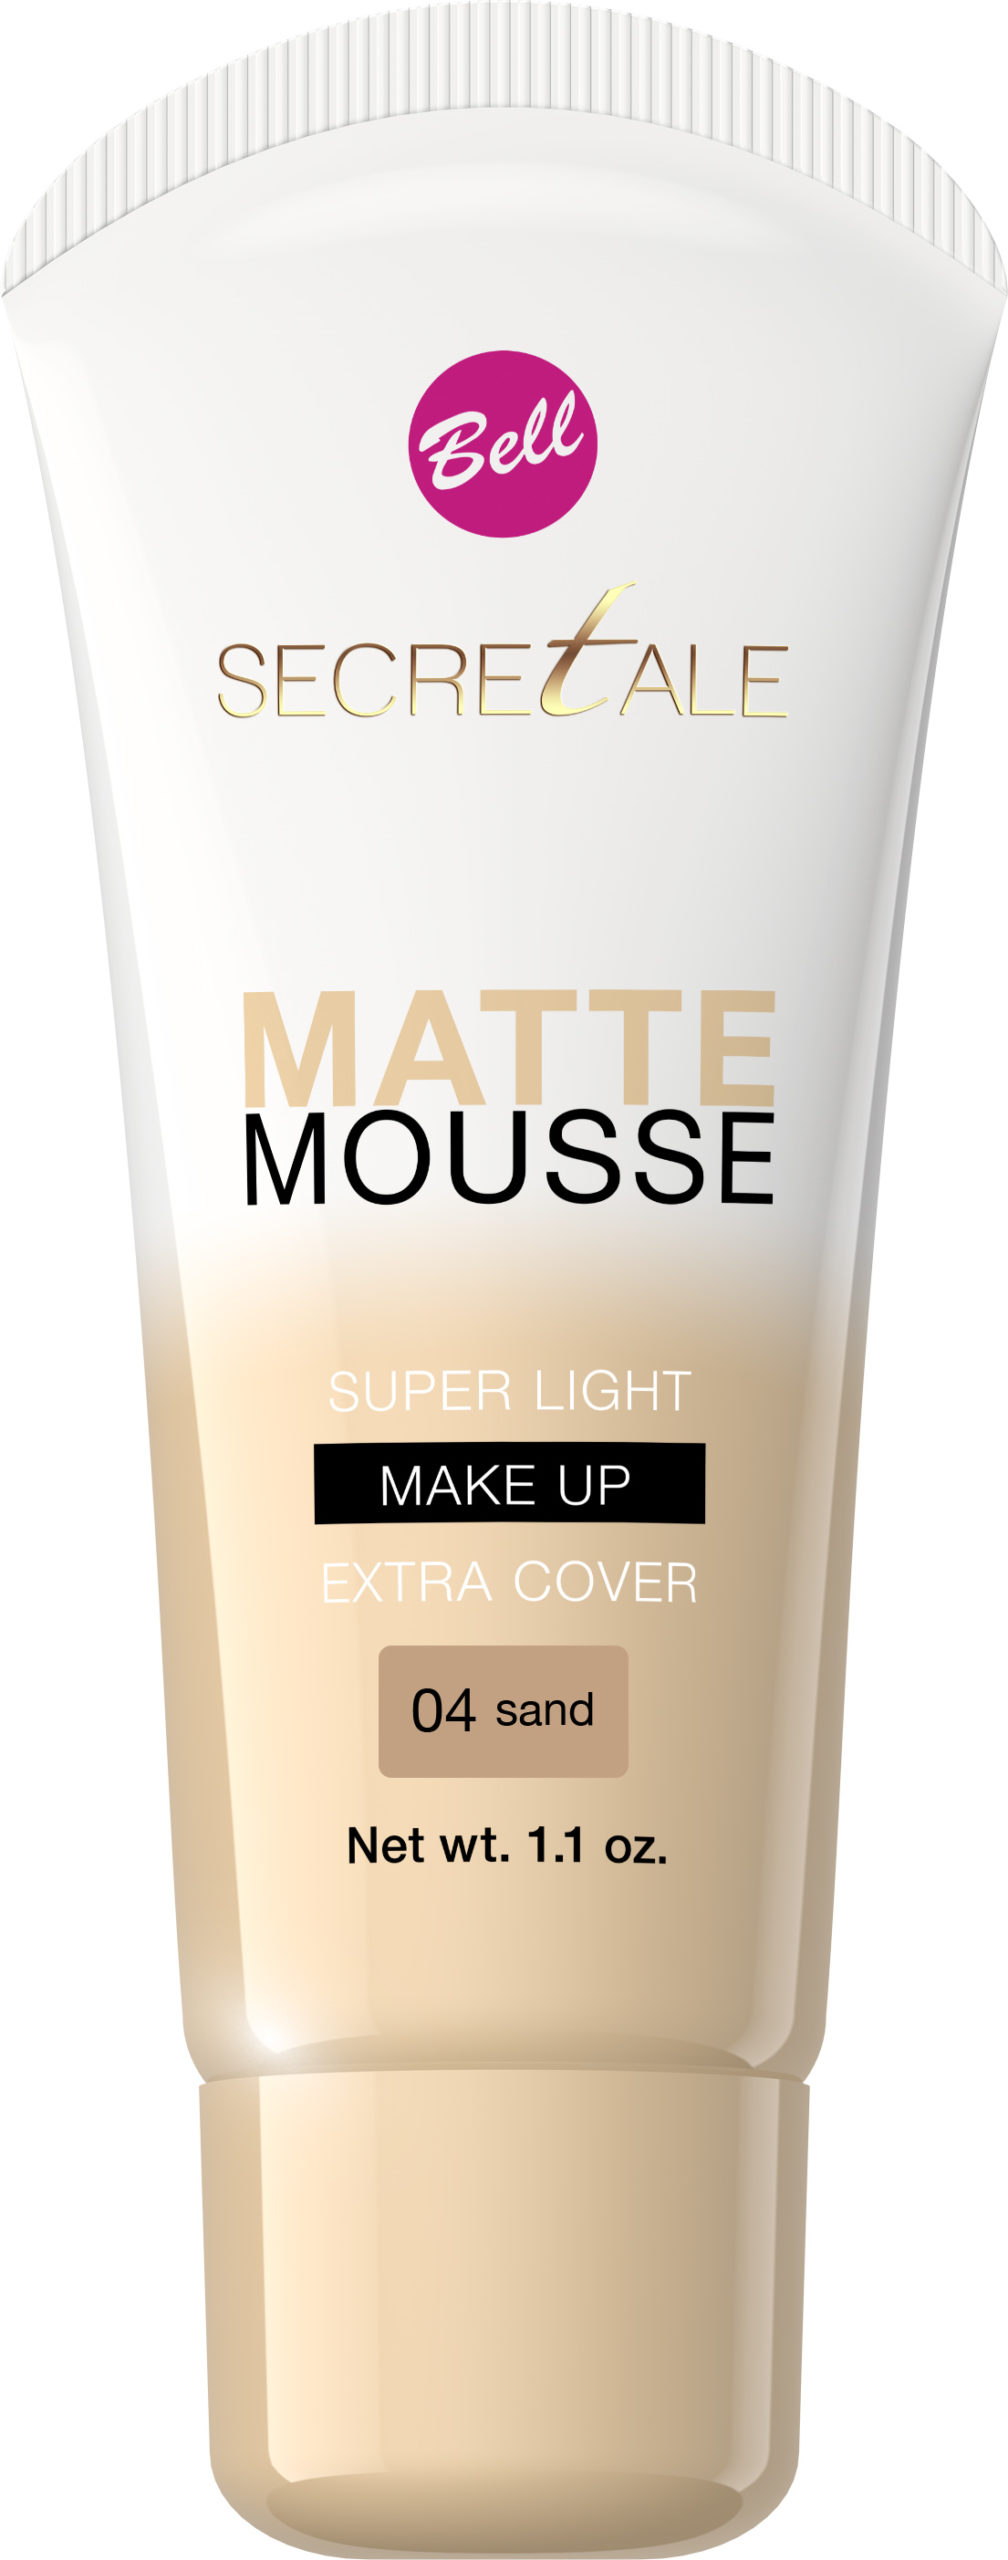 Secretale Matte Mousse Make-up